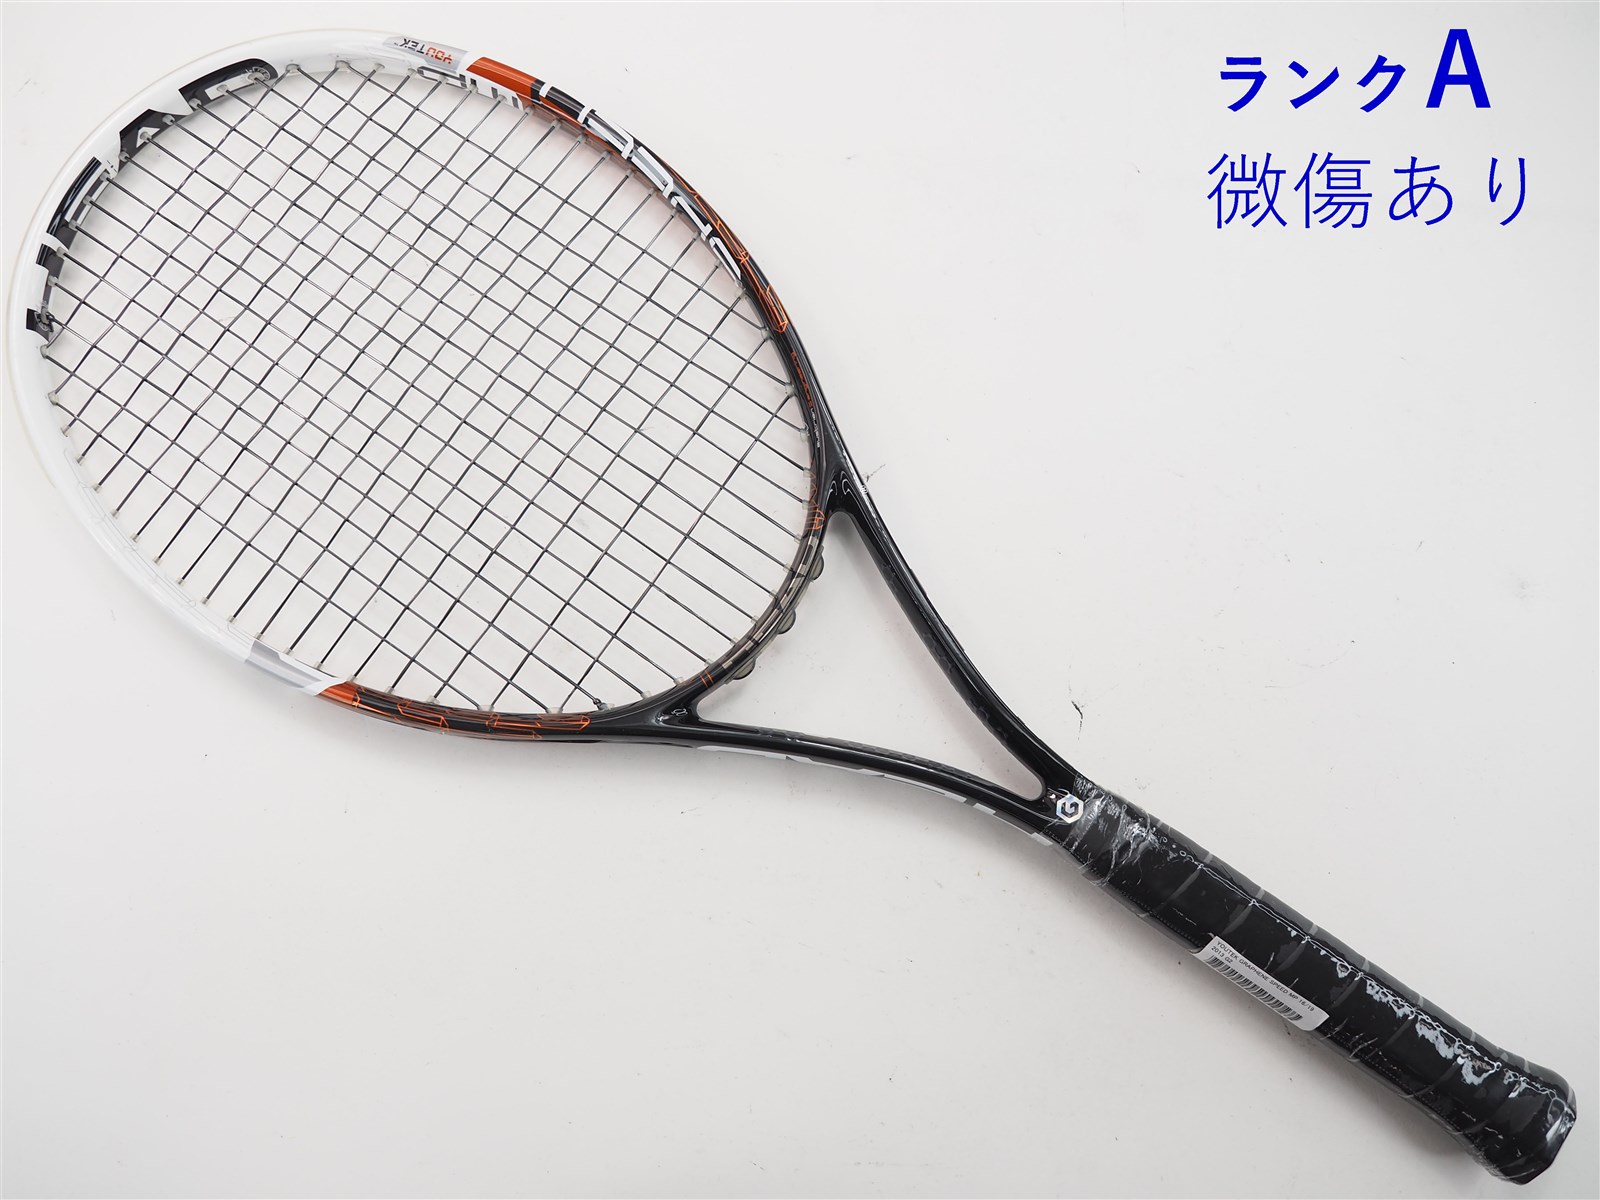 テニスラケット ヘッド ユーテック グラフィン スピード MP 16/19 2013年モデル (G2)HEAD YOUTEK GRAPHENE SPEED MP 16/19 2013G2装着グリップ